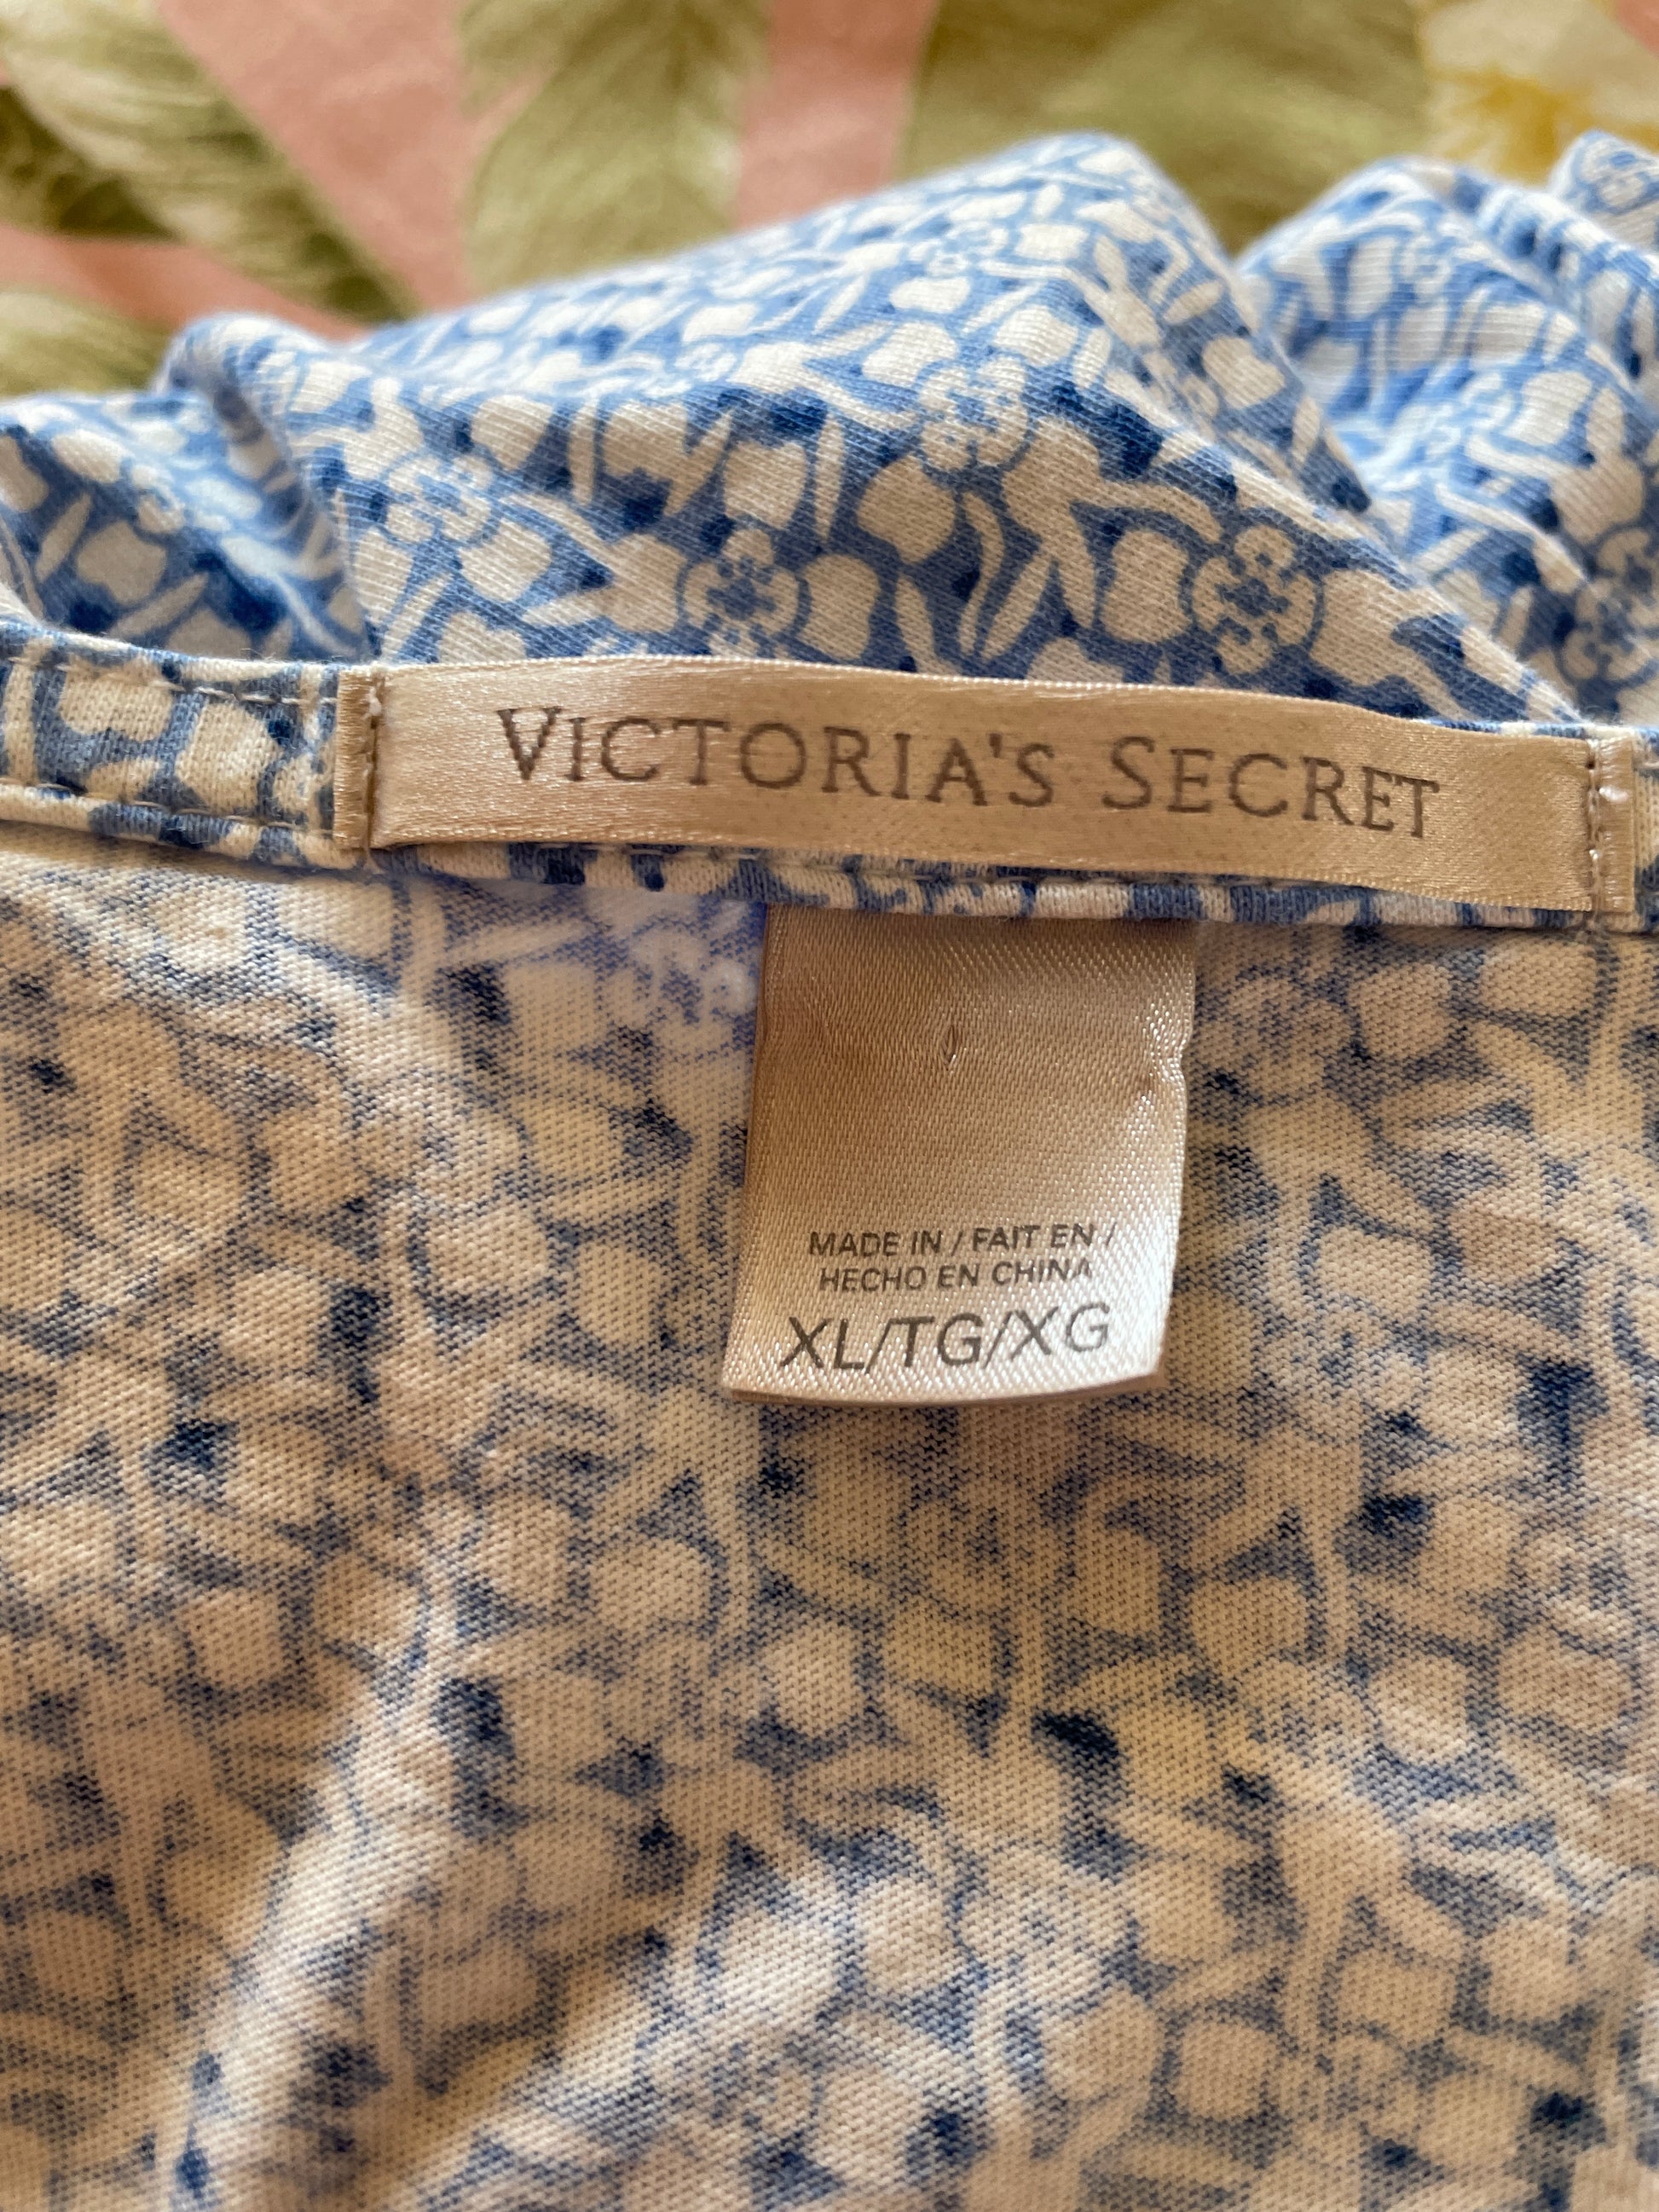  Victoria’s Secret 2000s Blue Print Bow Cotton Lingerie Nitie X/L